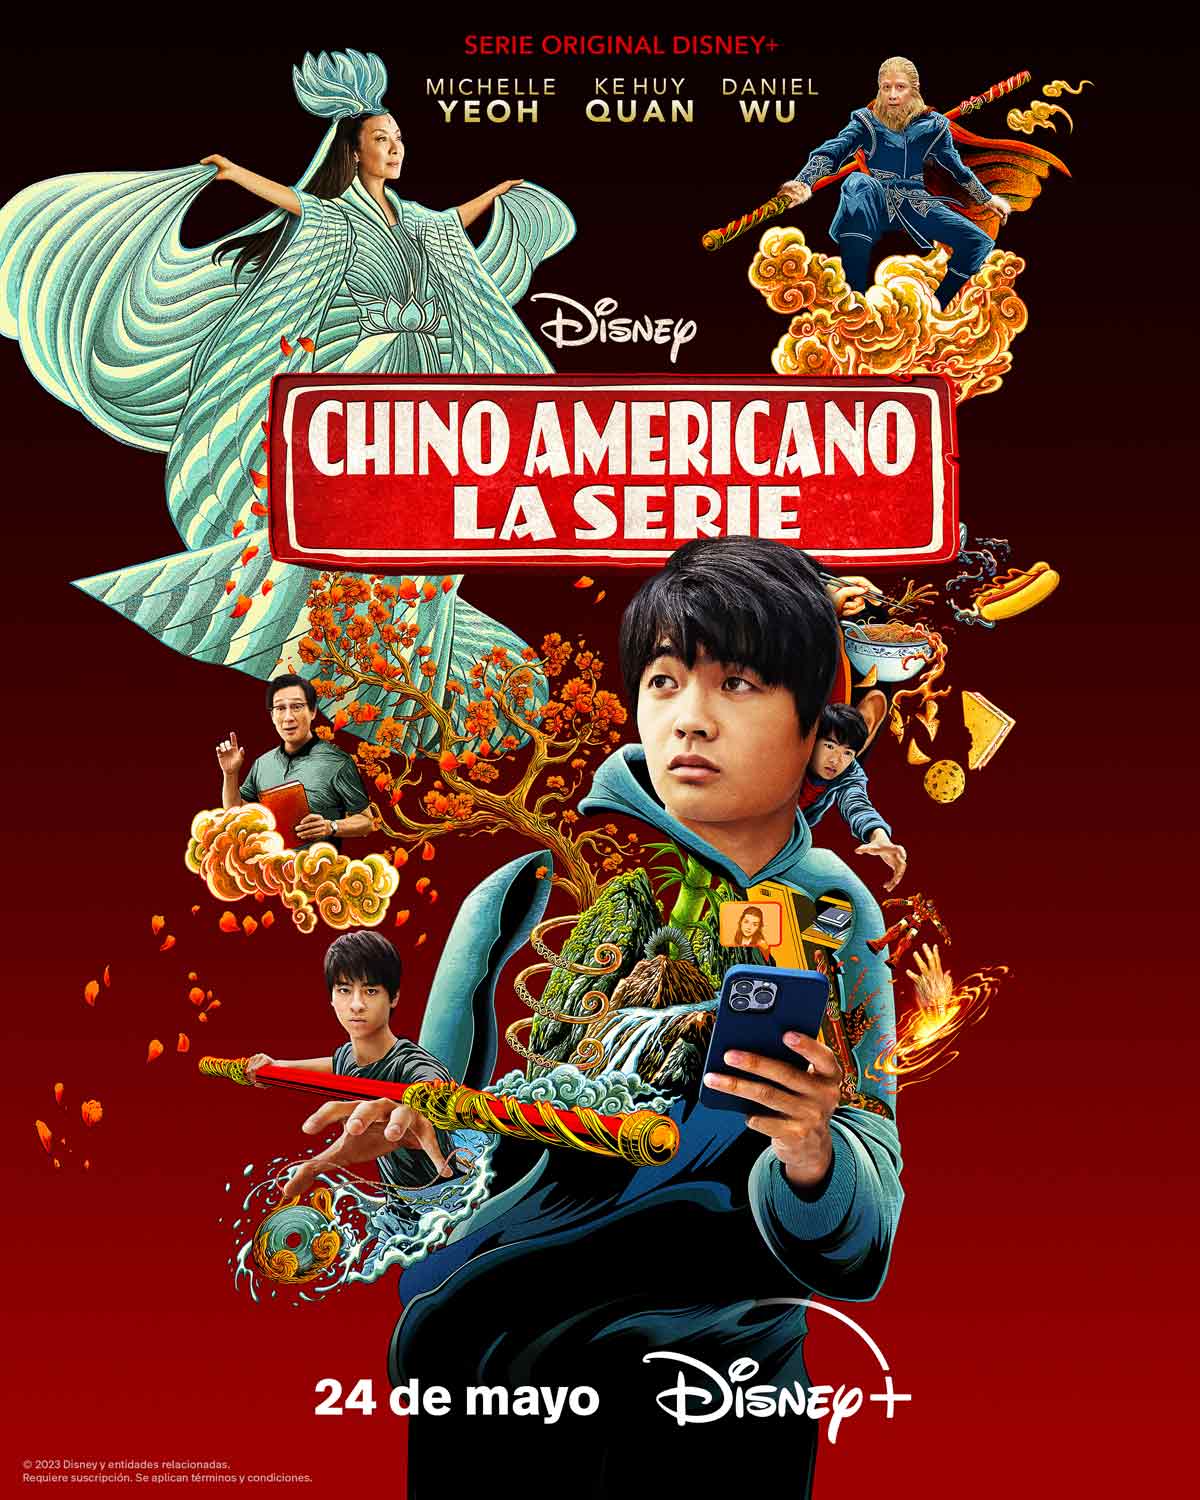 Caratula de Chino americano (Chino americano: La serie) 